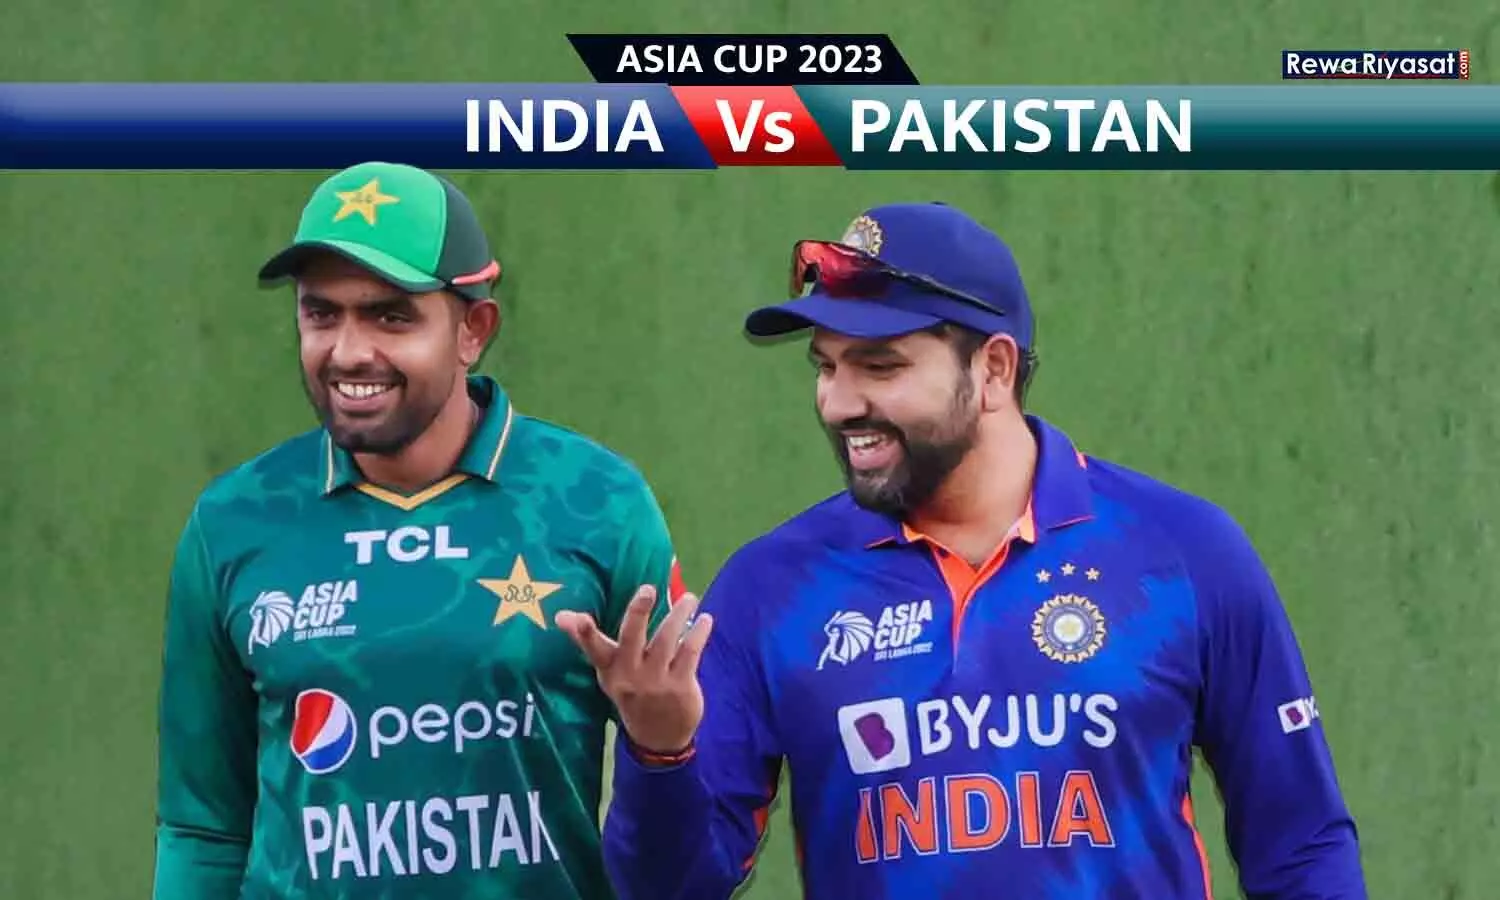 एशिया कप में भारत-पाकिस्तान मैच बारिश के कारण रद्द, पाकिस्तान को बैटिंग का मौका ही नहीं मिला, दोनों टीमों को 1-1 पॉइंट मिलें